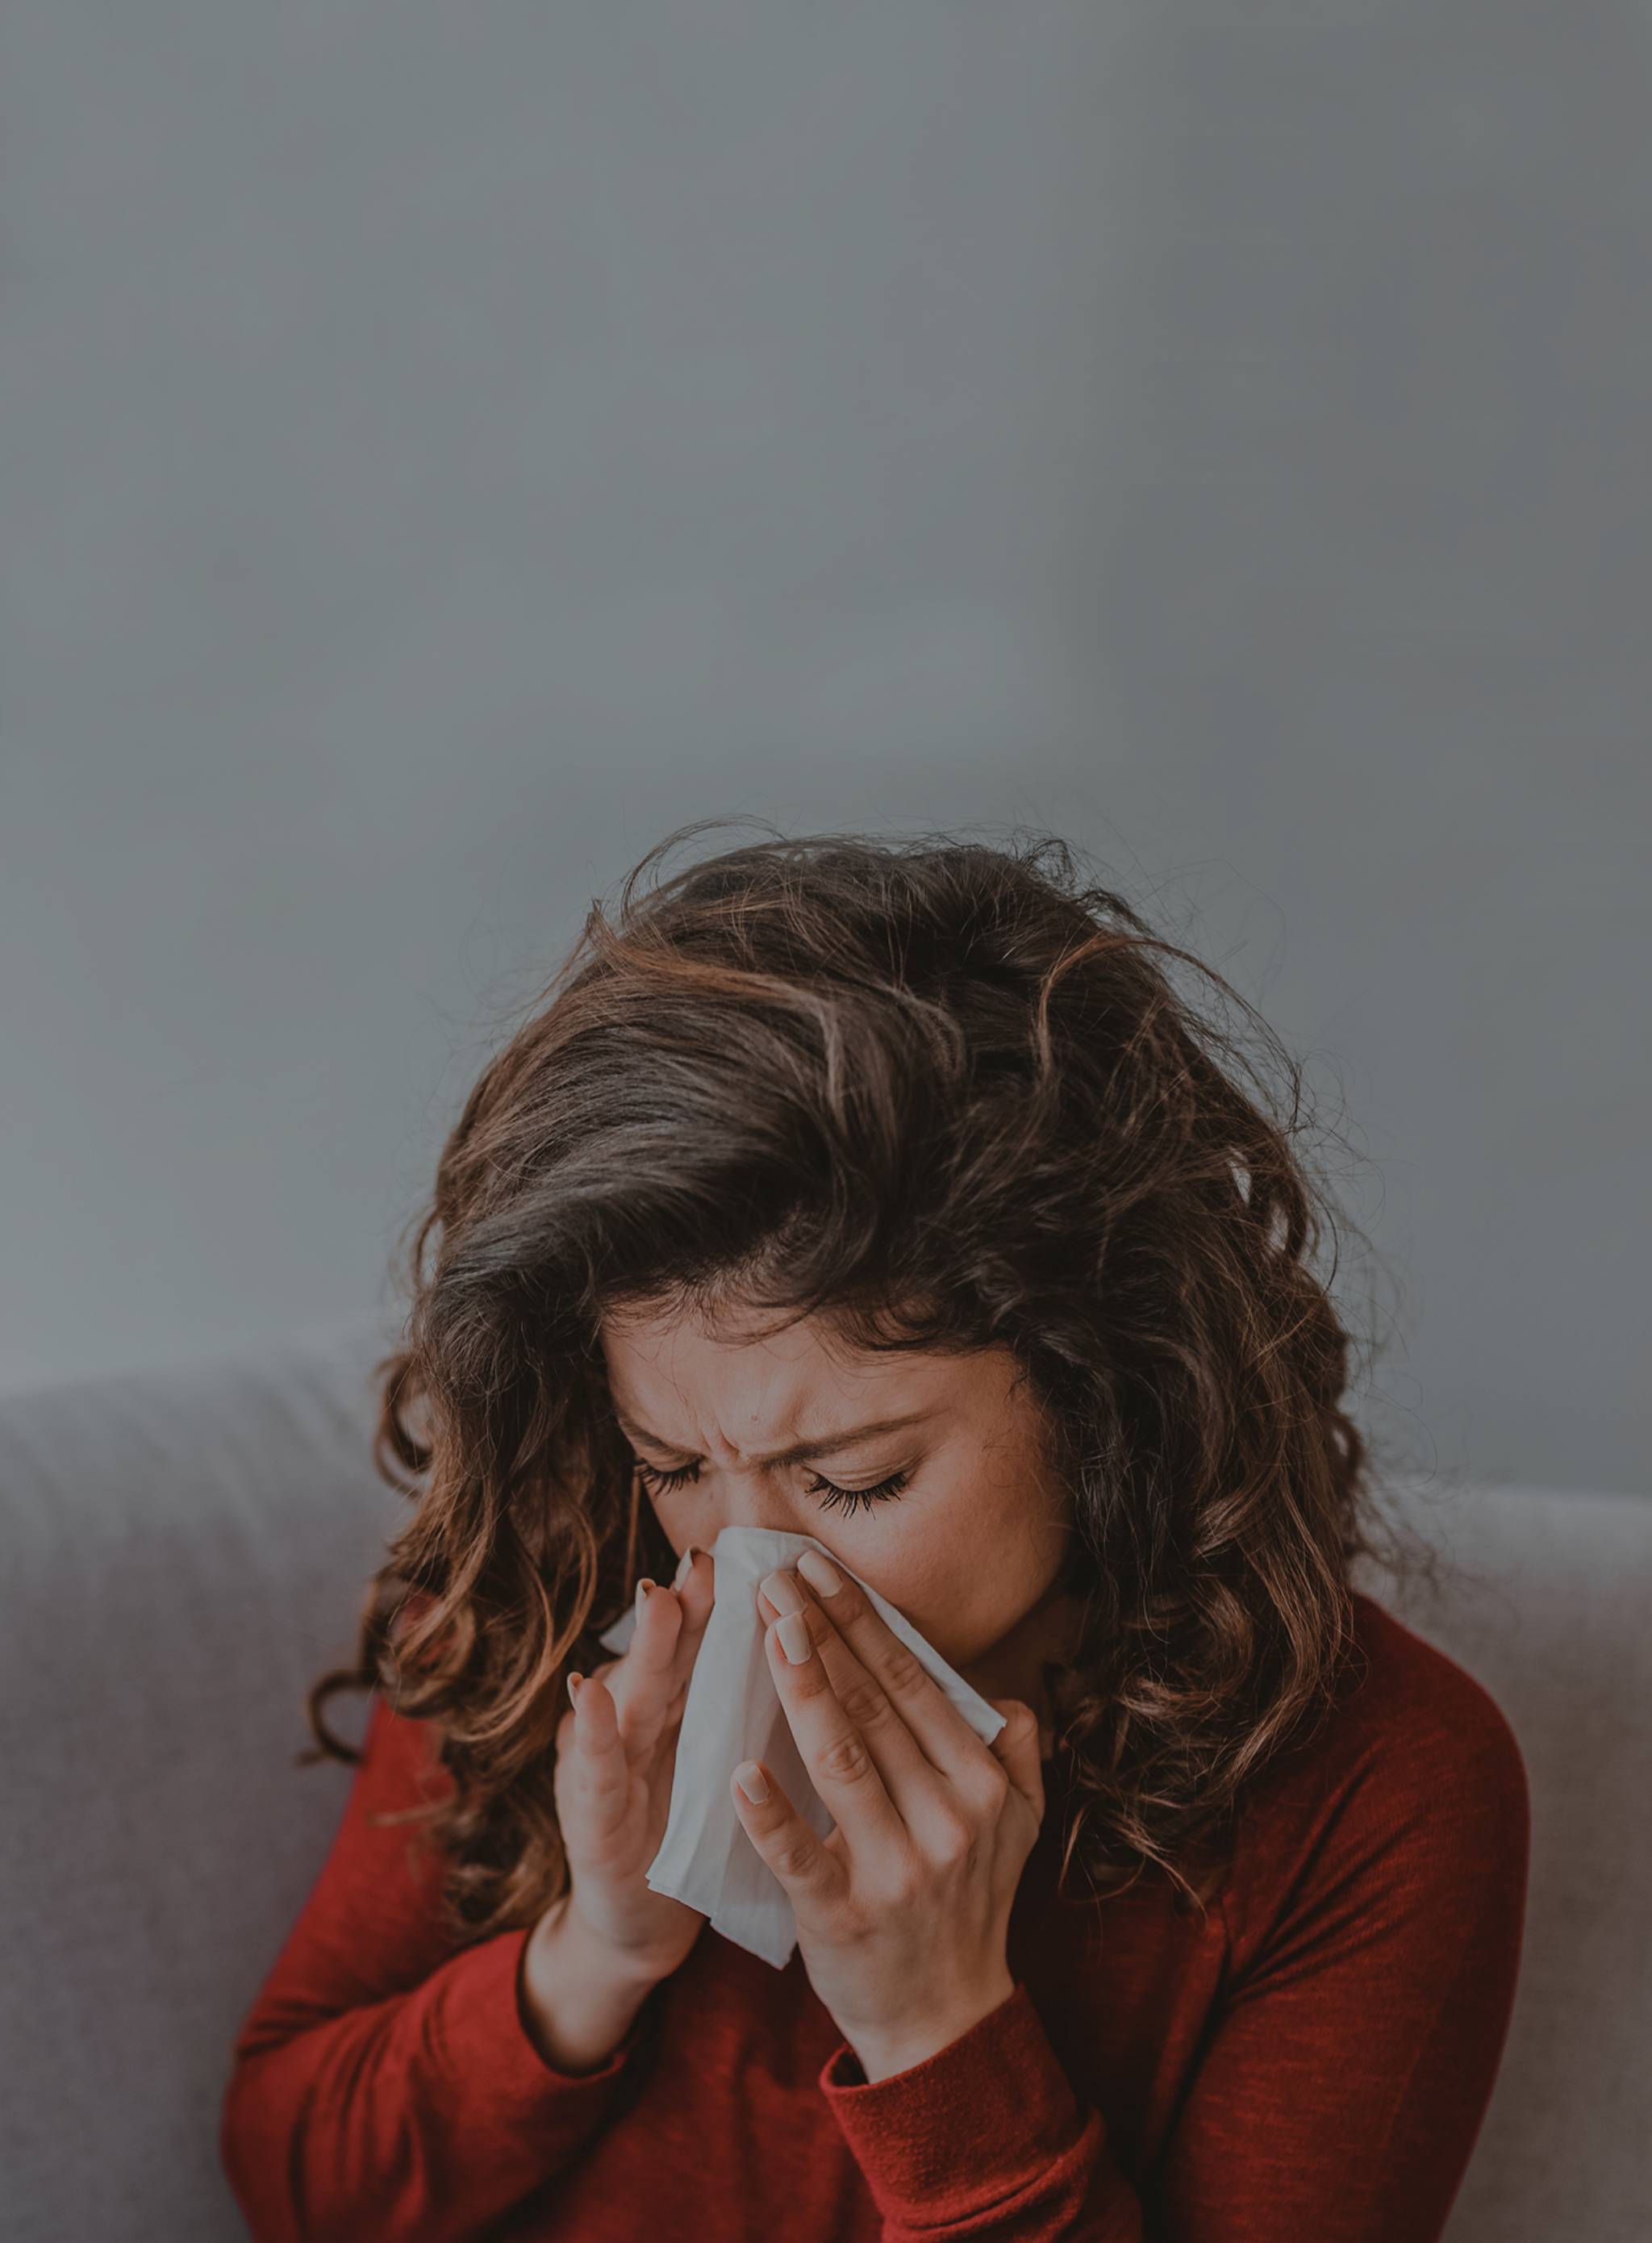 Eine braunhaarige Frau lehnt sich vor und putzt ihre Nase - Bei Allergien kann gleichzeitig eine verstopfte und laufende Nase auftreten.